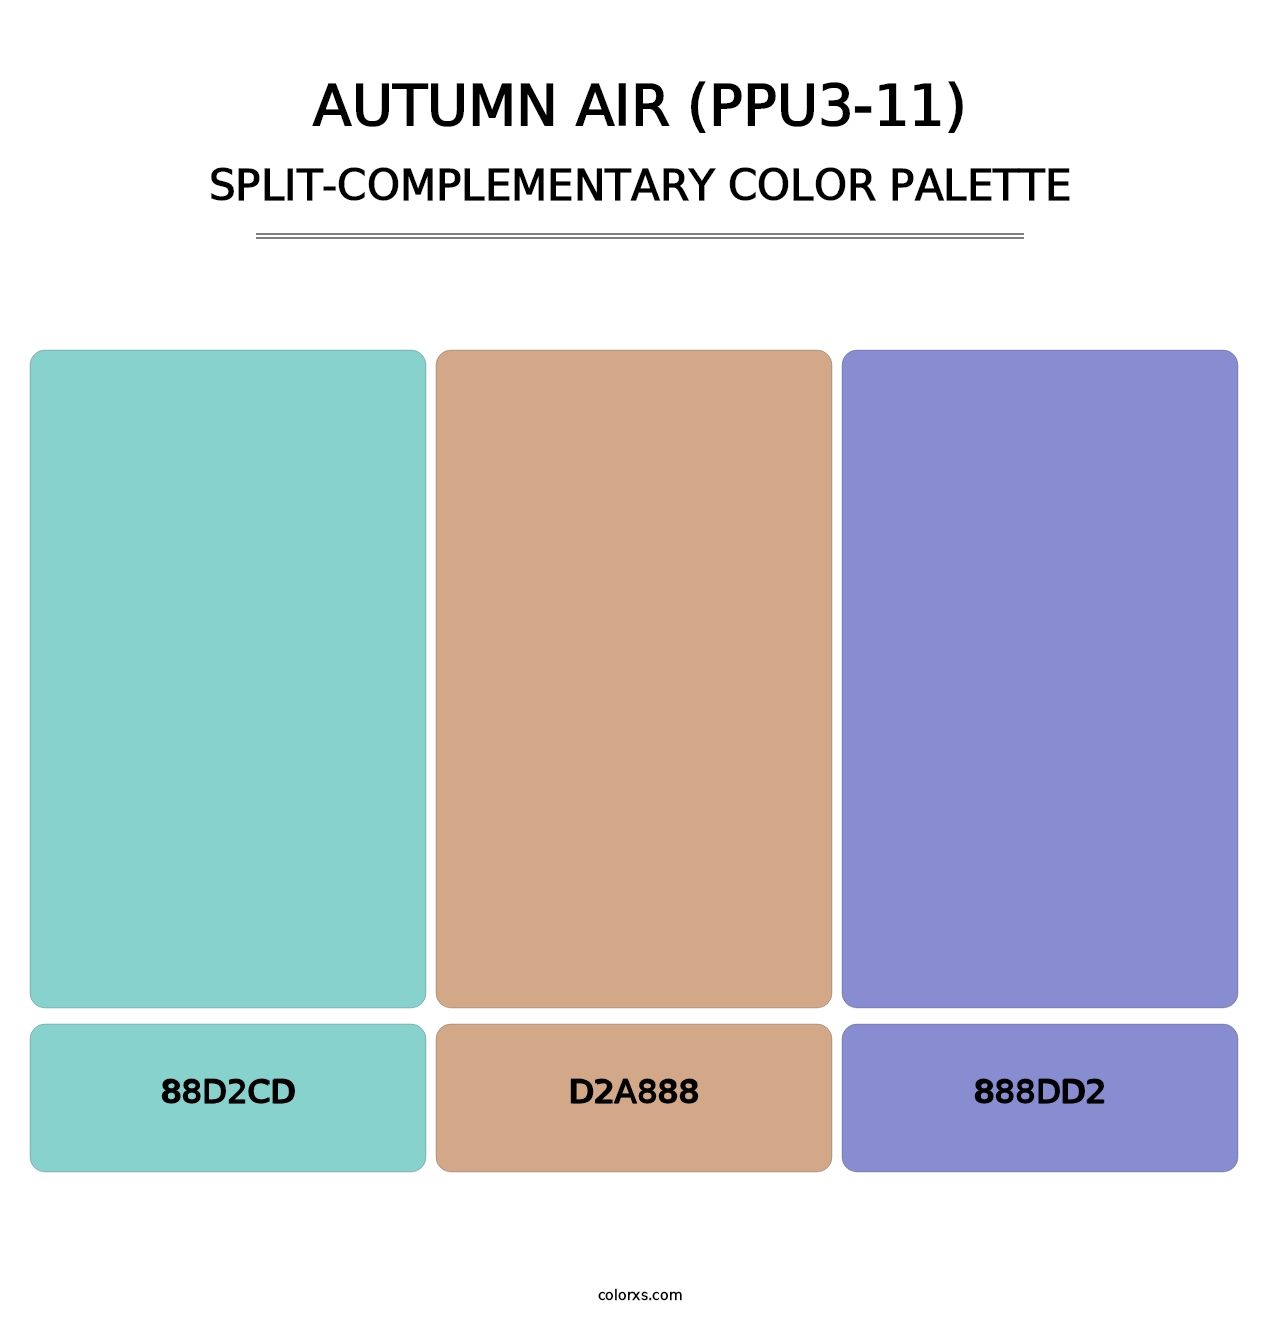 Autumn Air (PPU3-11) - Split-Complementary Color Palette